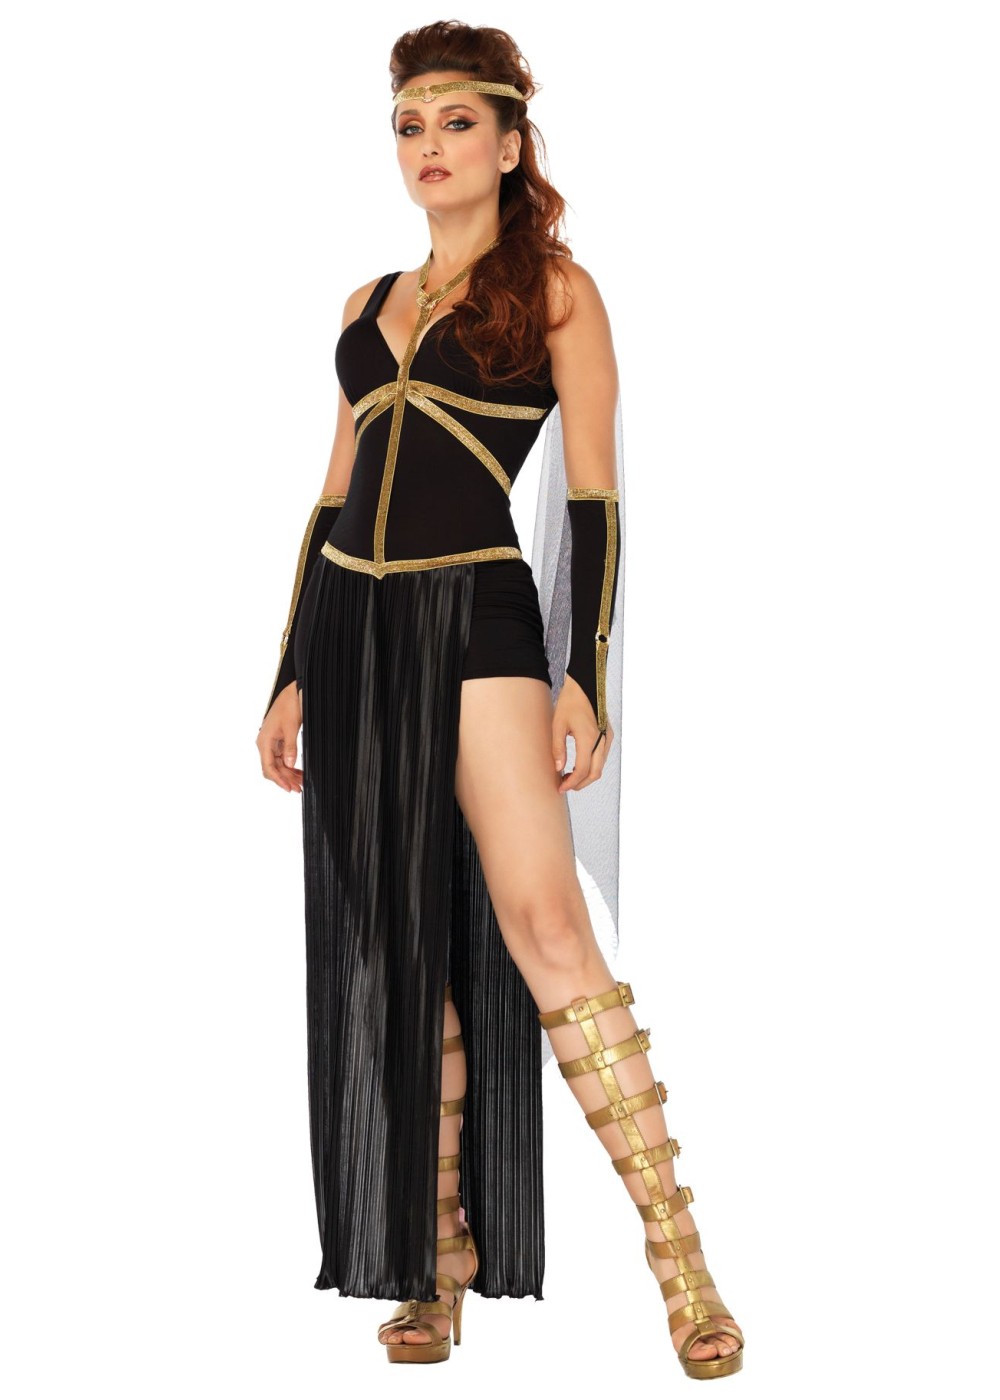 Dark Goddess Women Costume